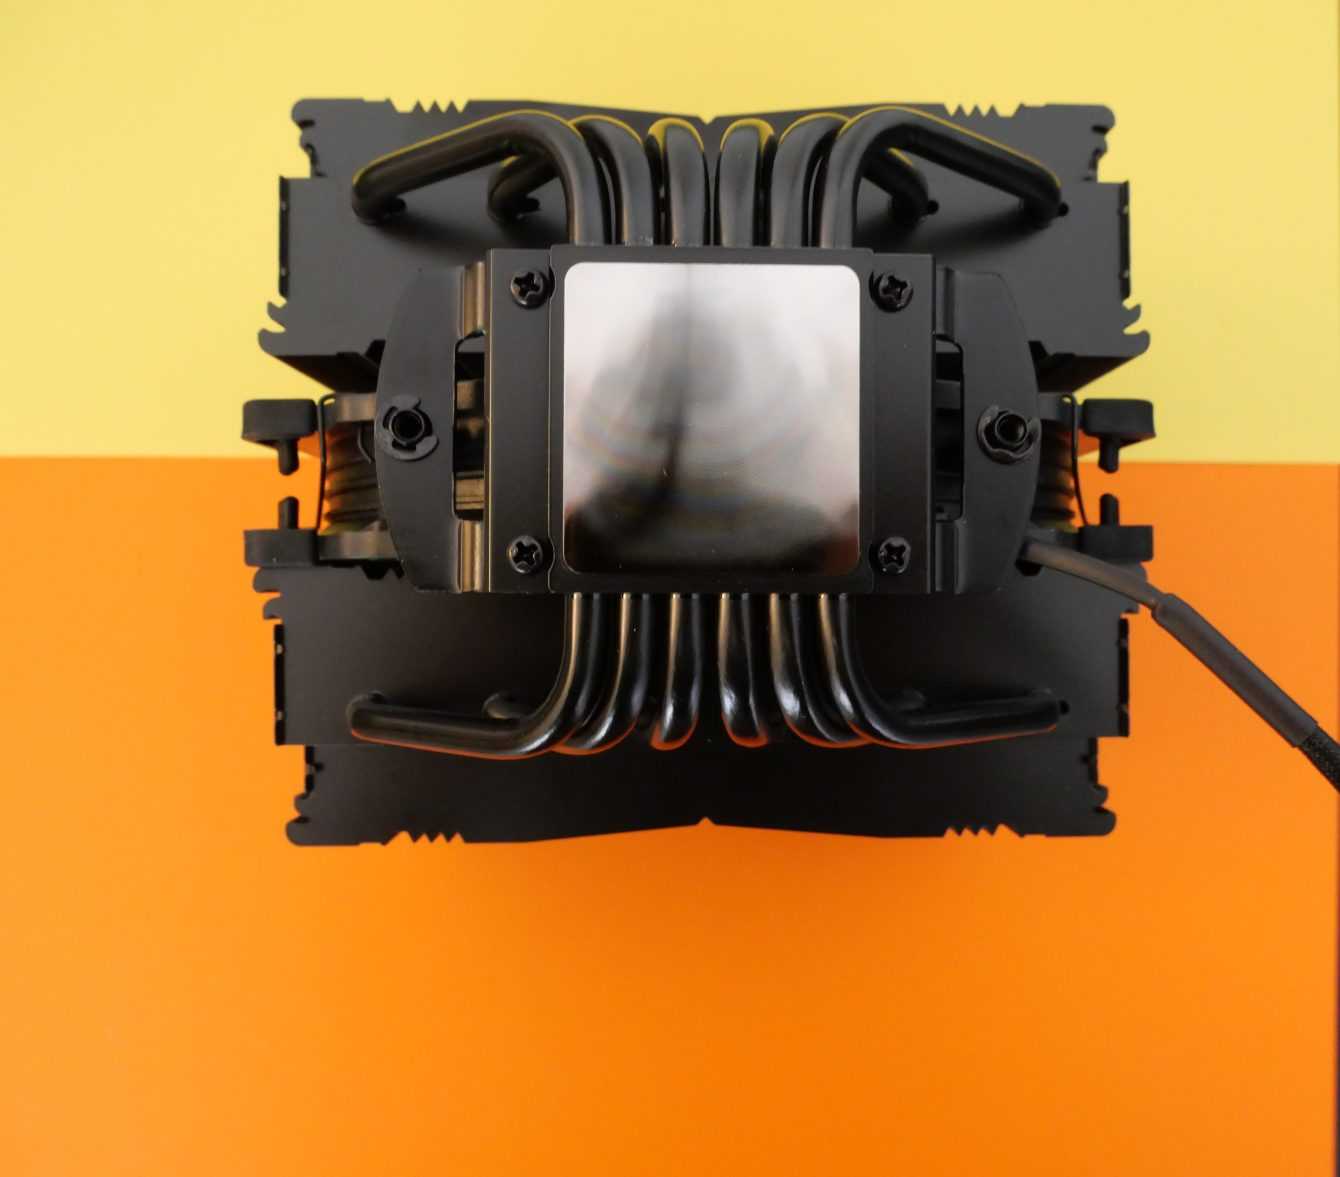 Noctua NH-D15 chromax.Black review: the best air cooler?